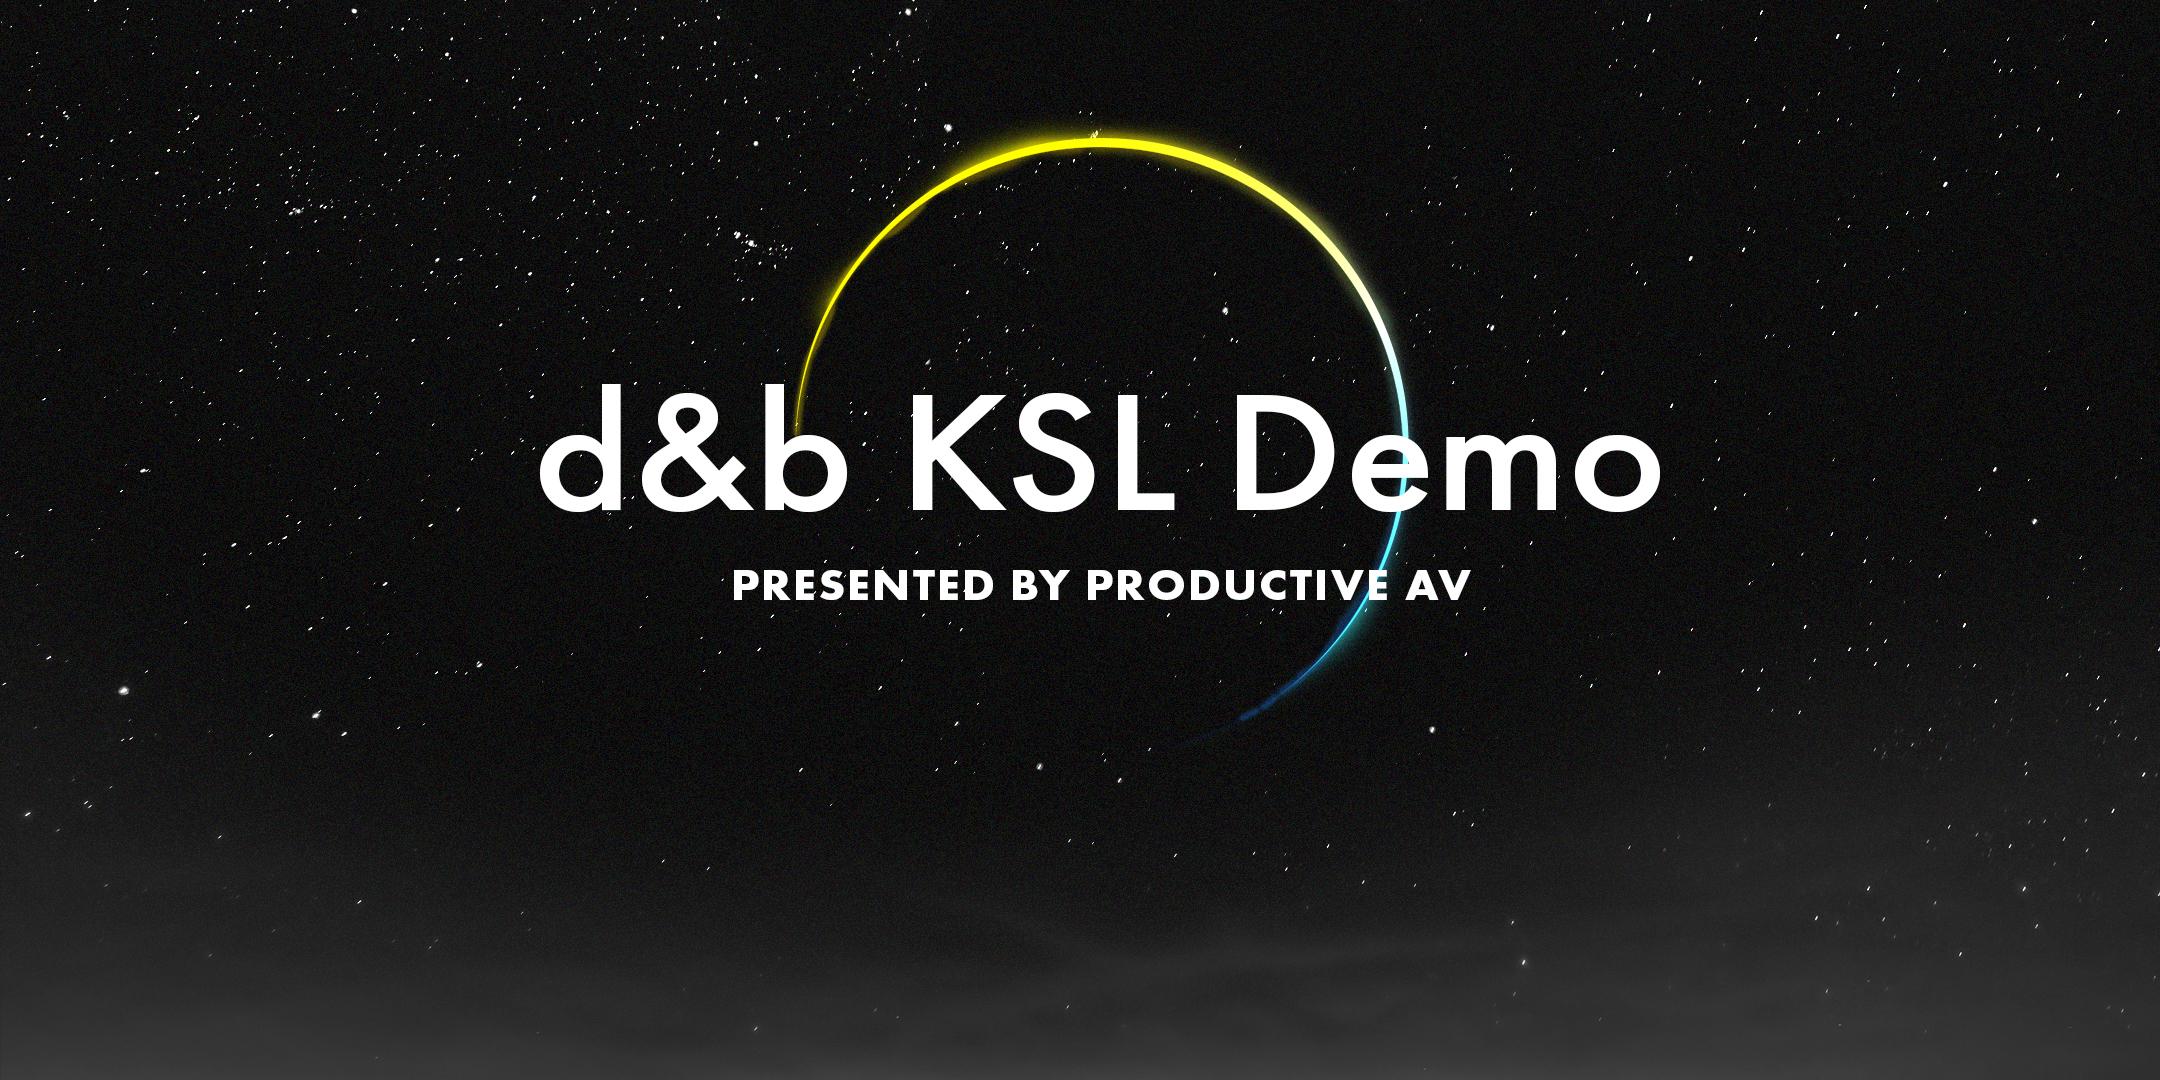 d&b Audiotechnik KSL Demo. Presented by Productive AV